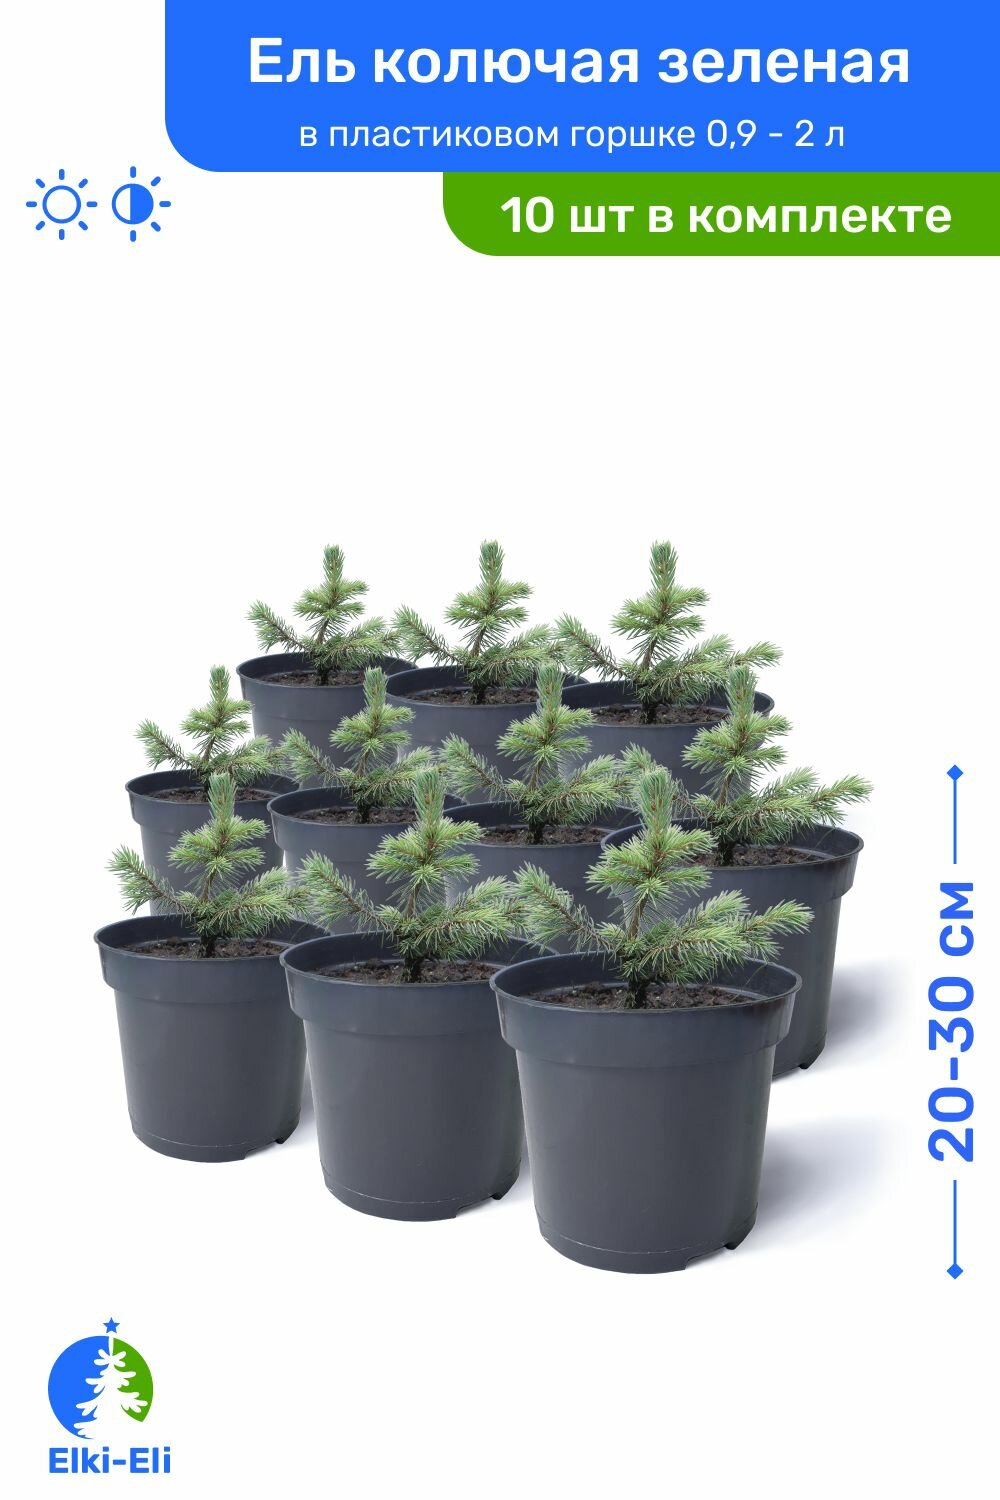 Ель колючая зелёная 20-30 см в пластиковом горшке 0,9-2 л, саженец, хвойное живое растение, комплект из 10 шт